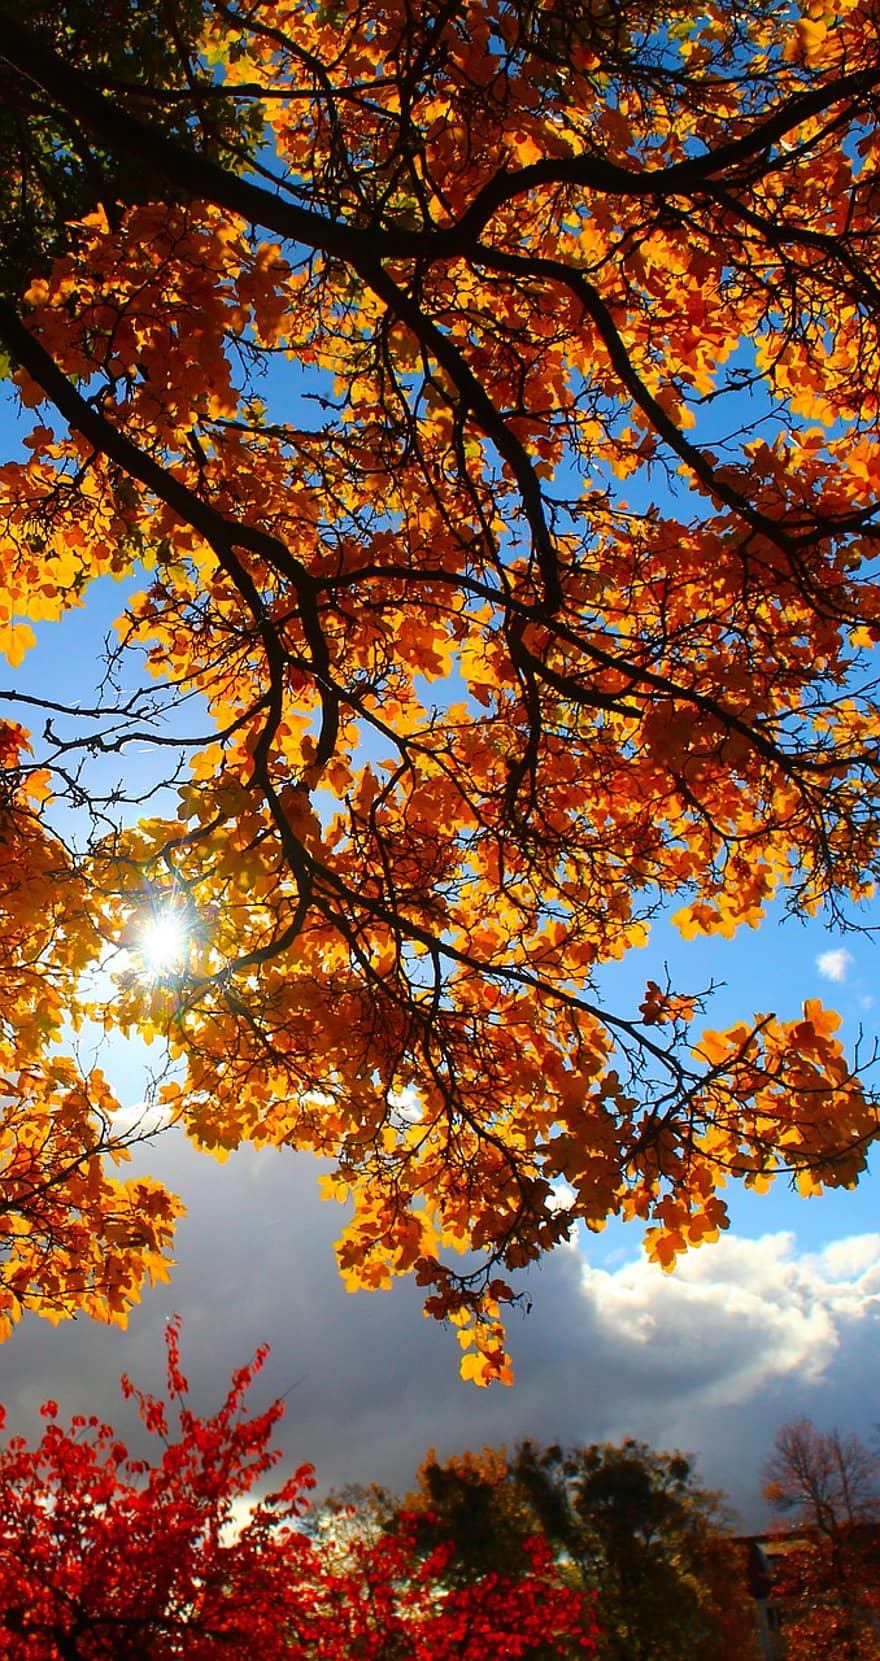 φθινόπωρο, κλαδια δεντρου, δέντρο, φύλλα, ηλιακό φως, ουρανός, φύλλωμα, πτώση, φύλλο, κίτρινος, εποχή